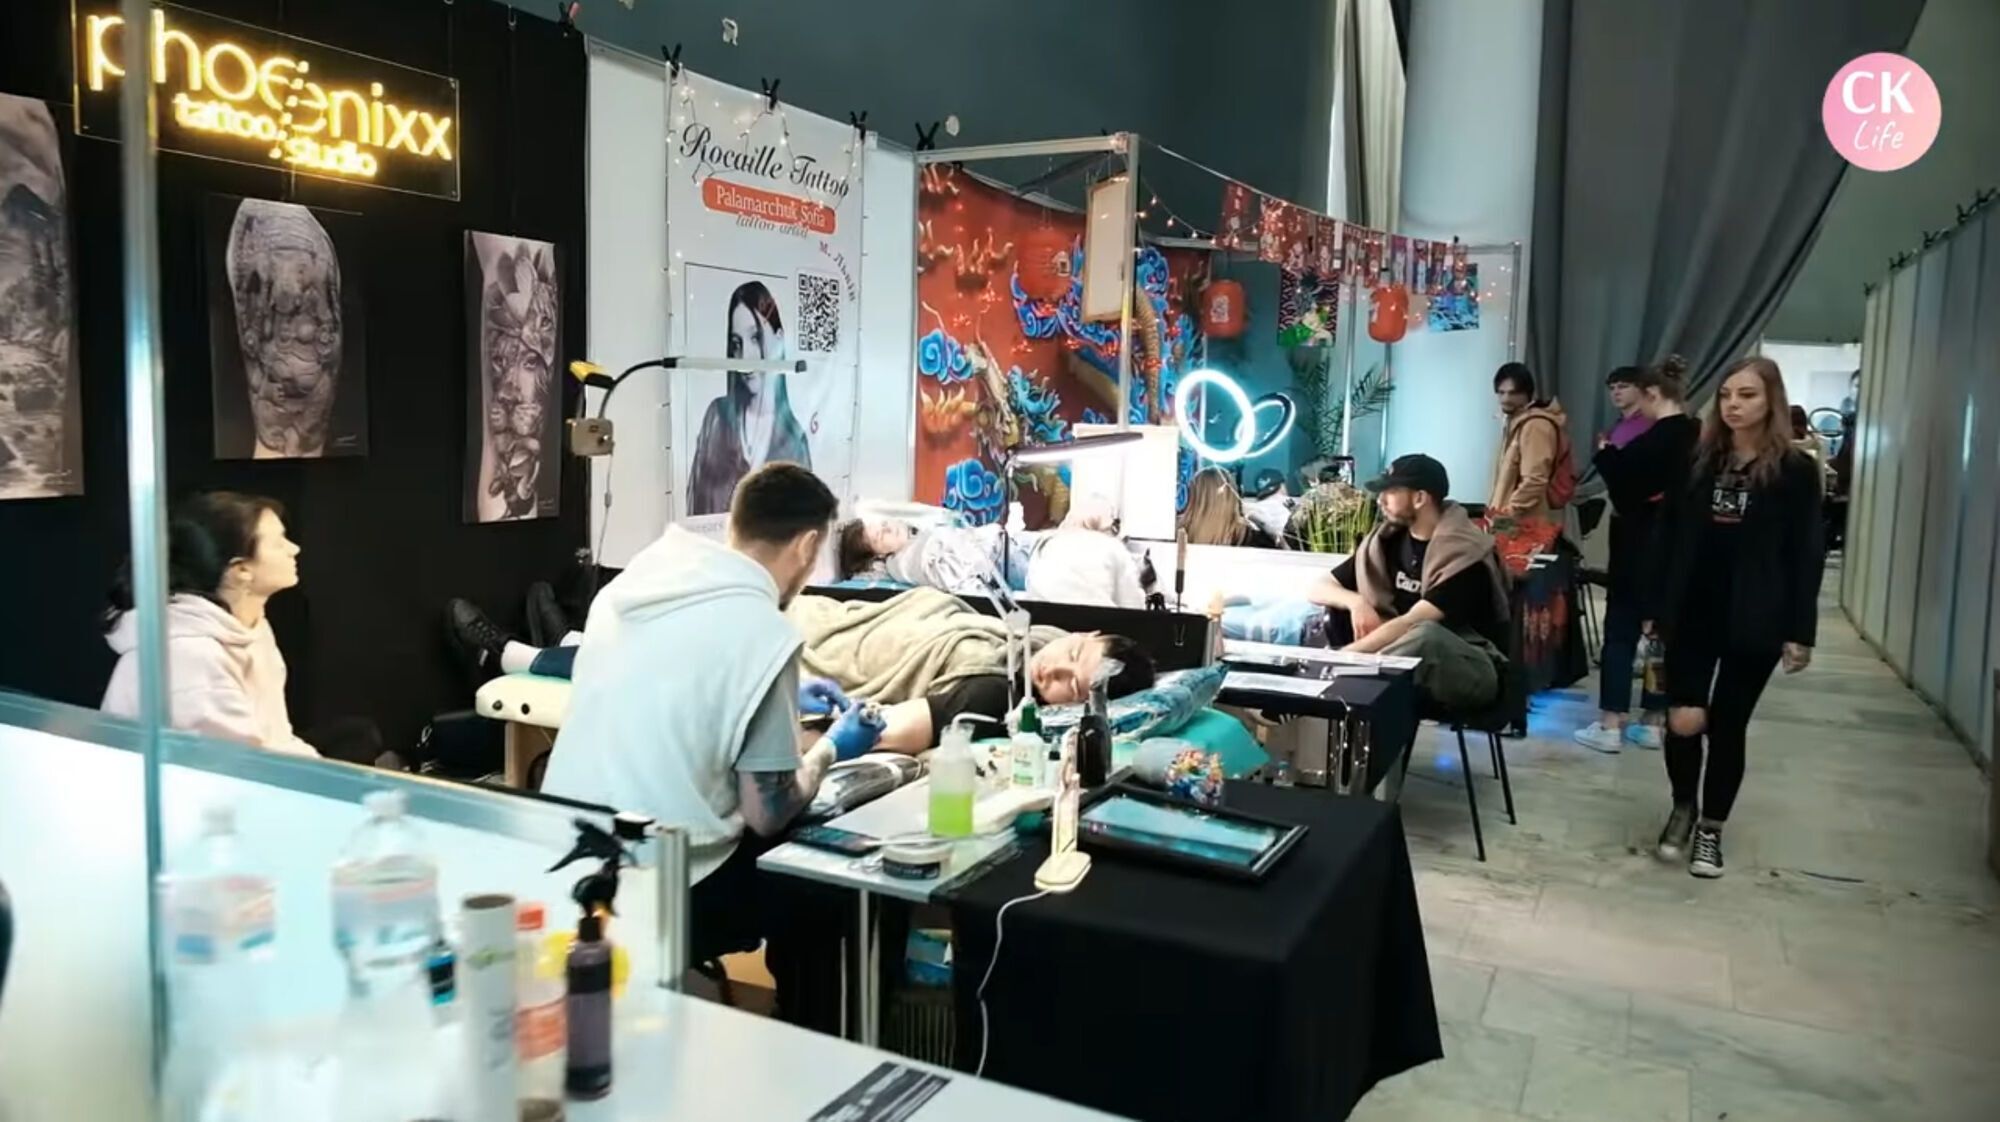 Змагання тату-майстрів, dj-сети та маркети: журналісти СК Лайф відвідали масштабну арт-подію (відео)